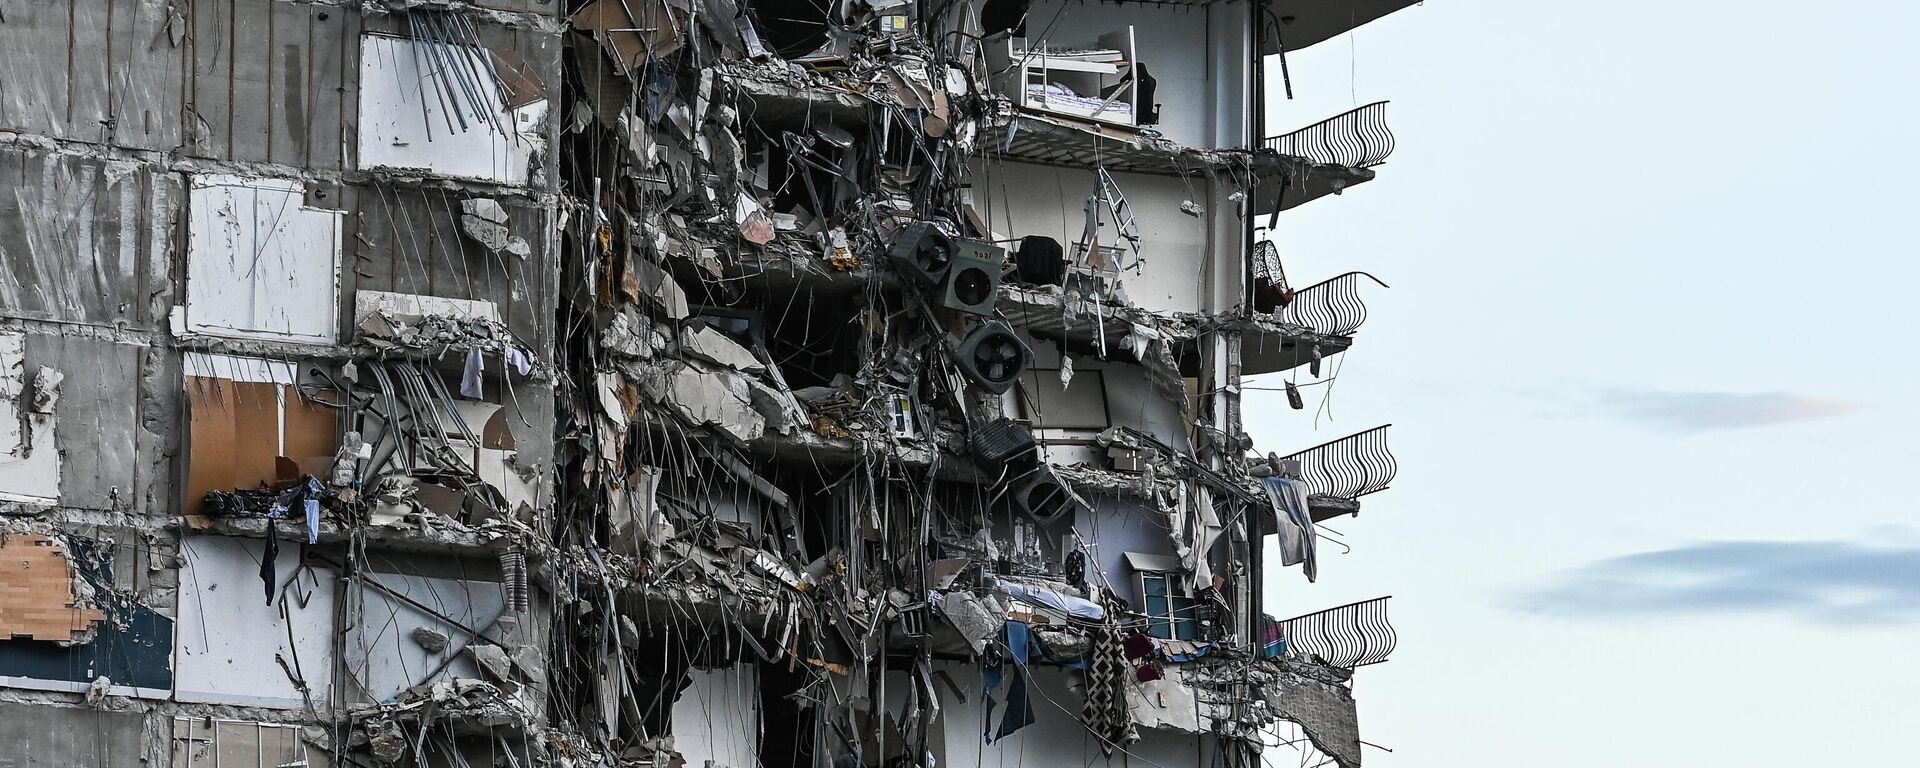 Parte del condominio colapsado en Miami el 24 de junio, 2021 - Sputnik Mundo, 1920, 01.07.2021